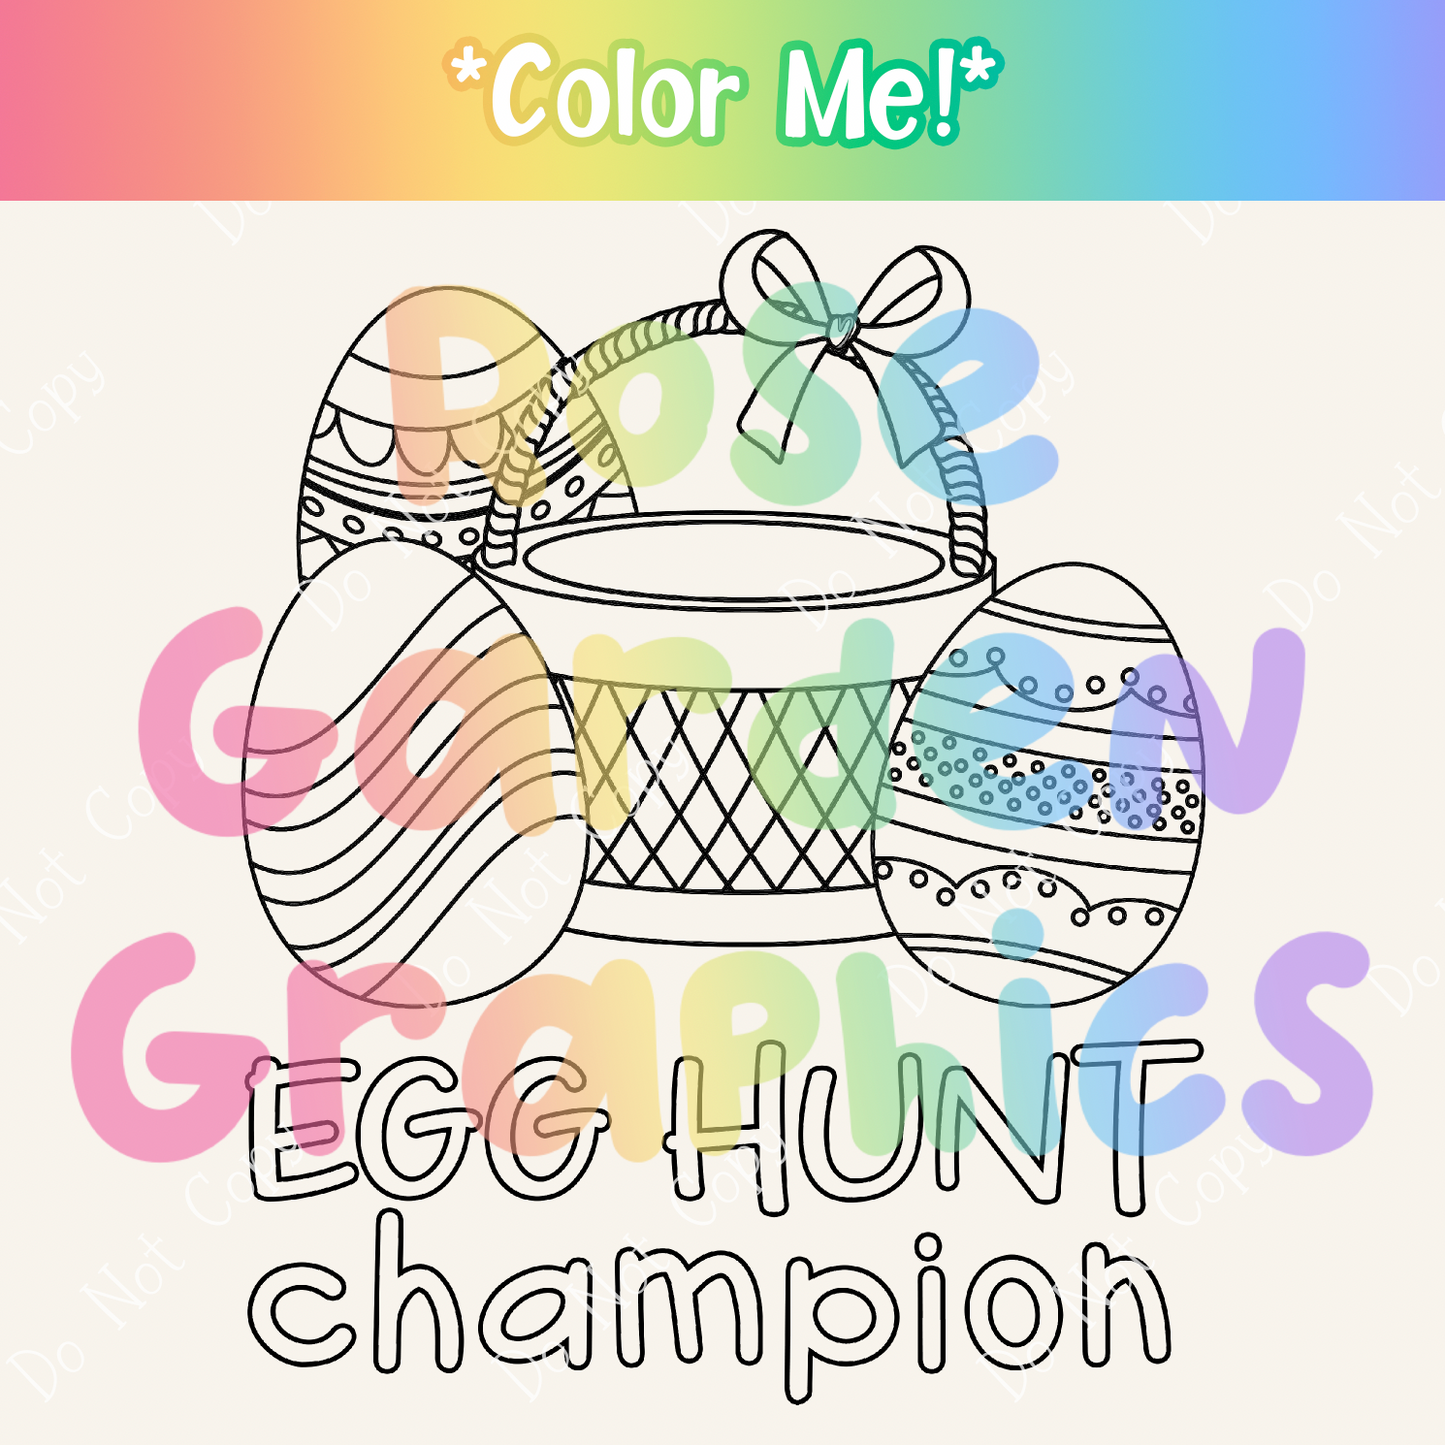 Color Me Easter Eggs "Egg Hunt Champion" PNG